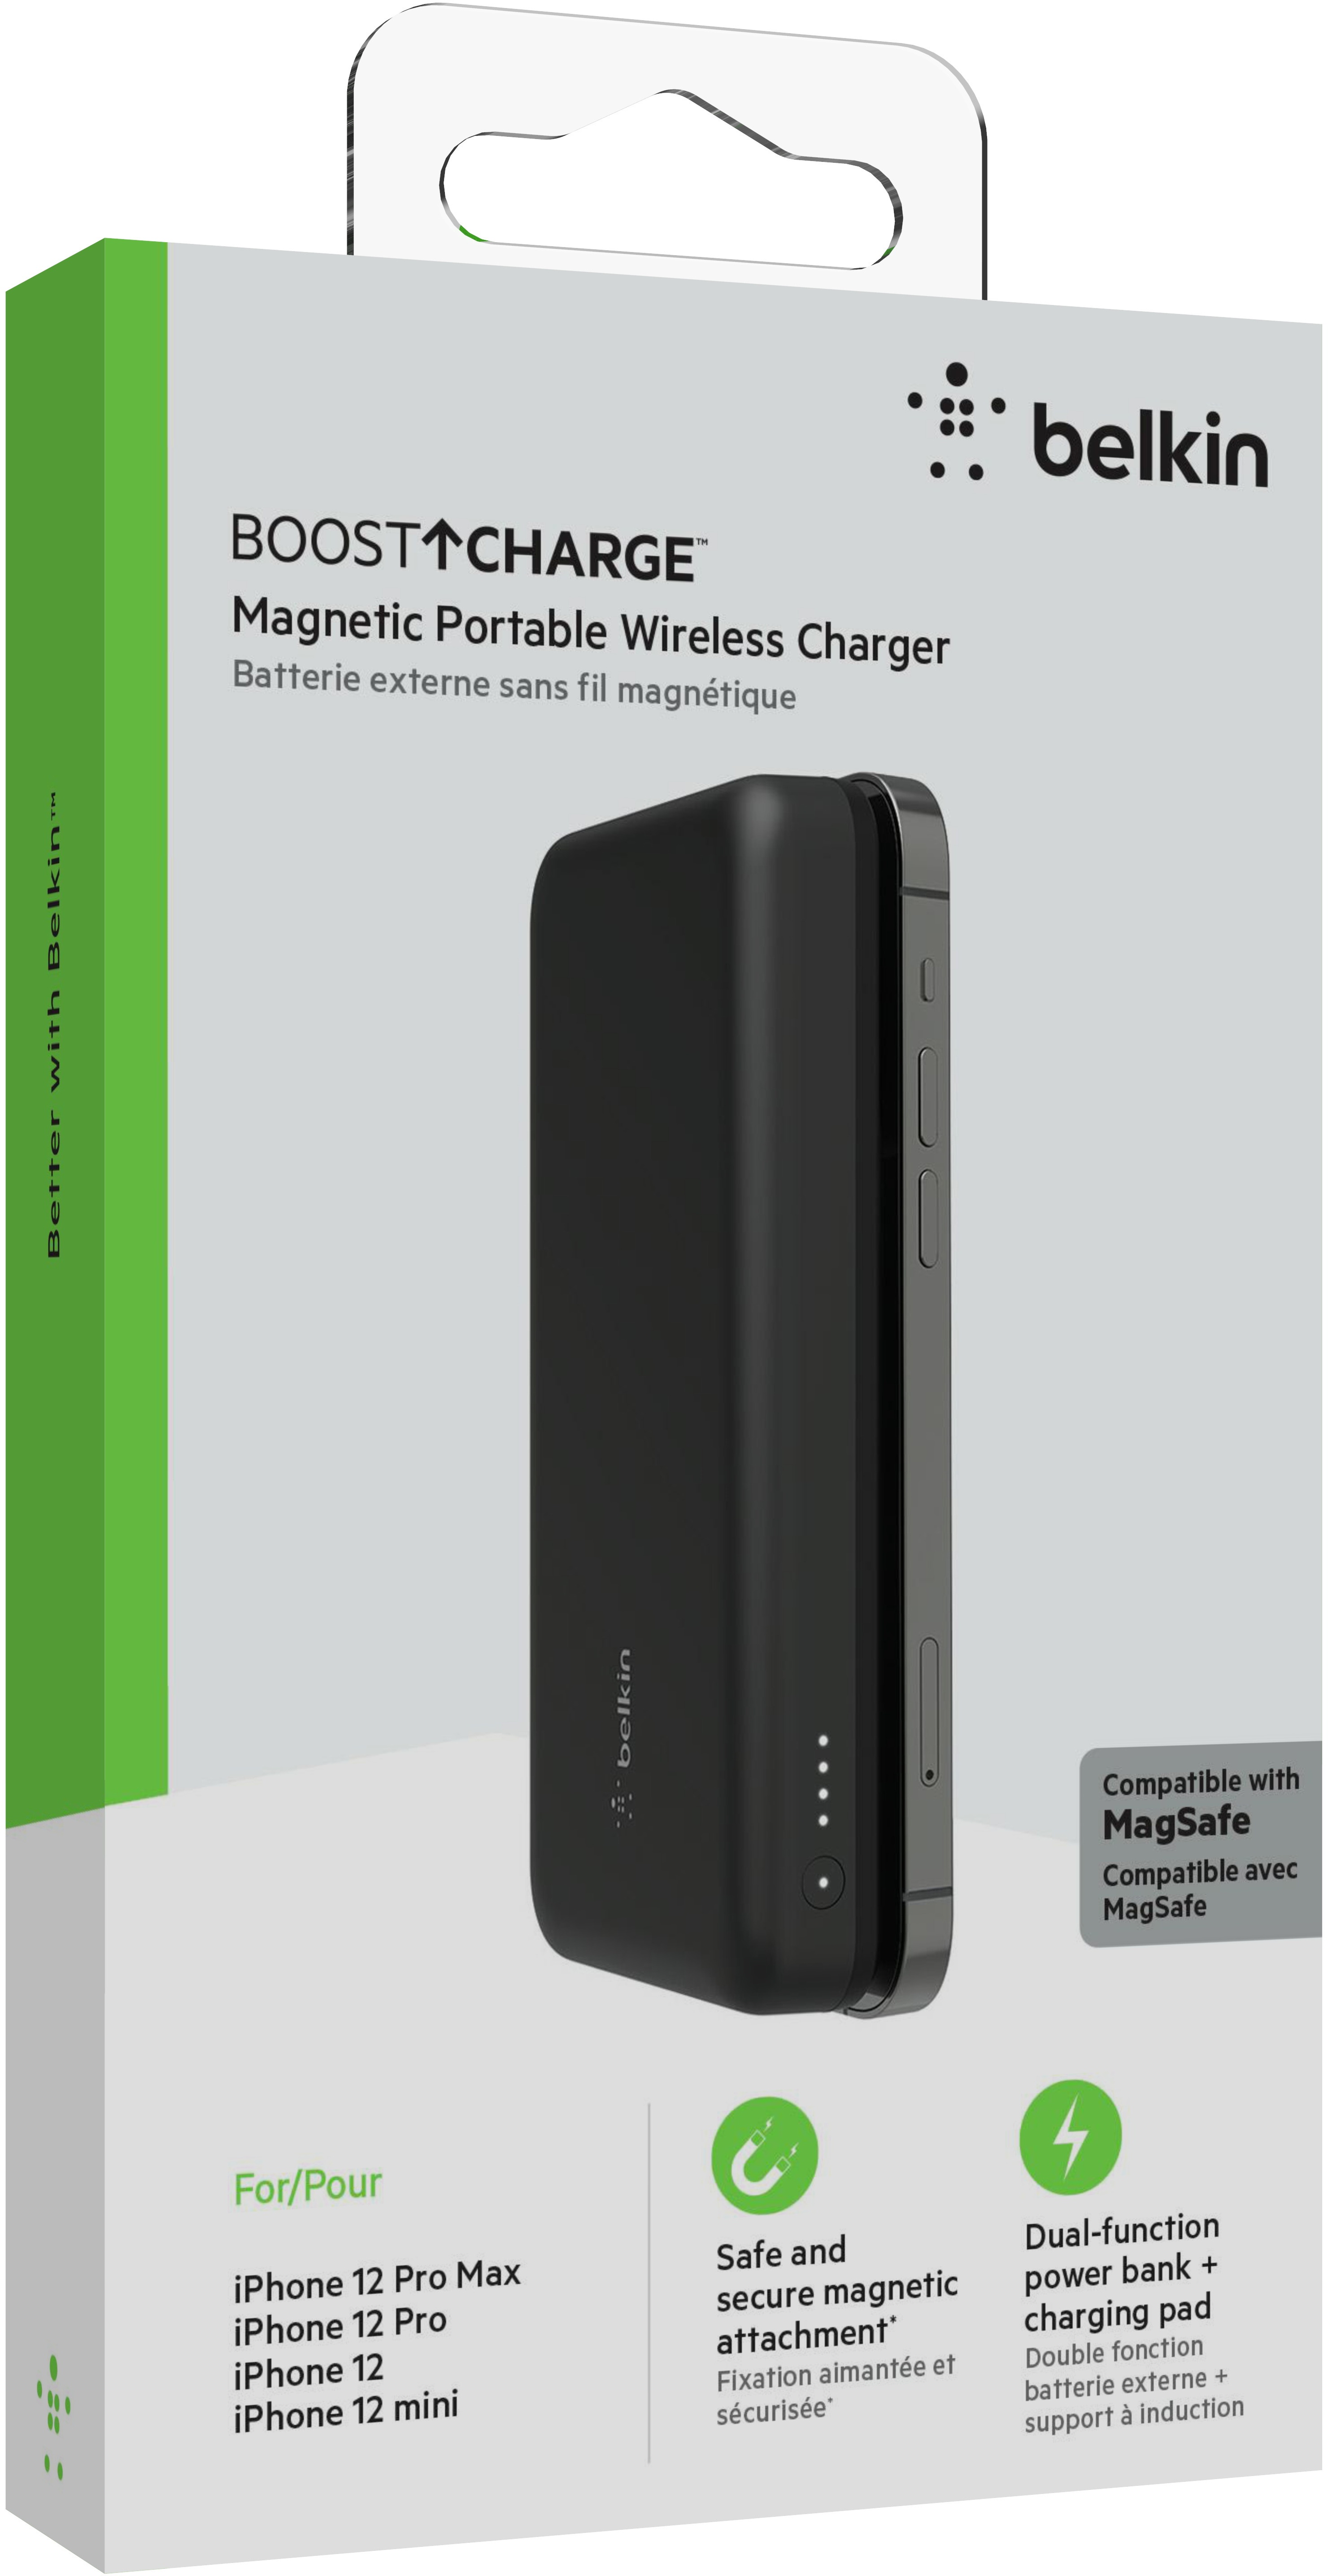 belkin Batterie externe sans fil magnétique, chargeur portable compatible  avec MagSafe pour iPhone 12, 13 